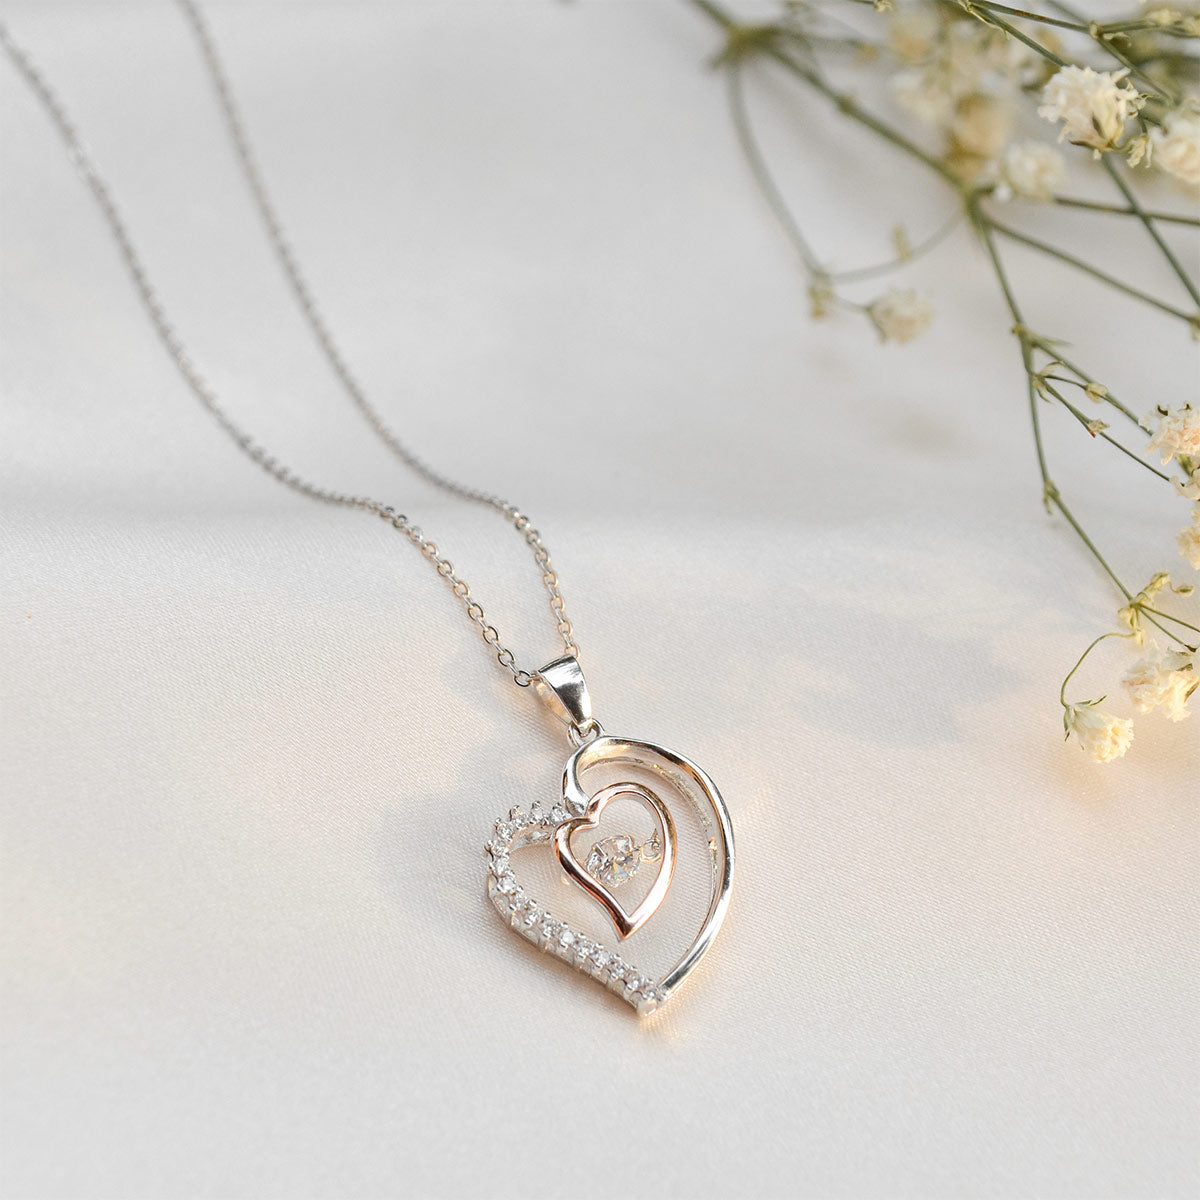 Bestie, Straighten Your Crown - Luxe Heart Necklace Gift Bundle